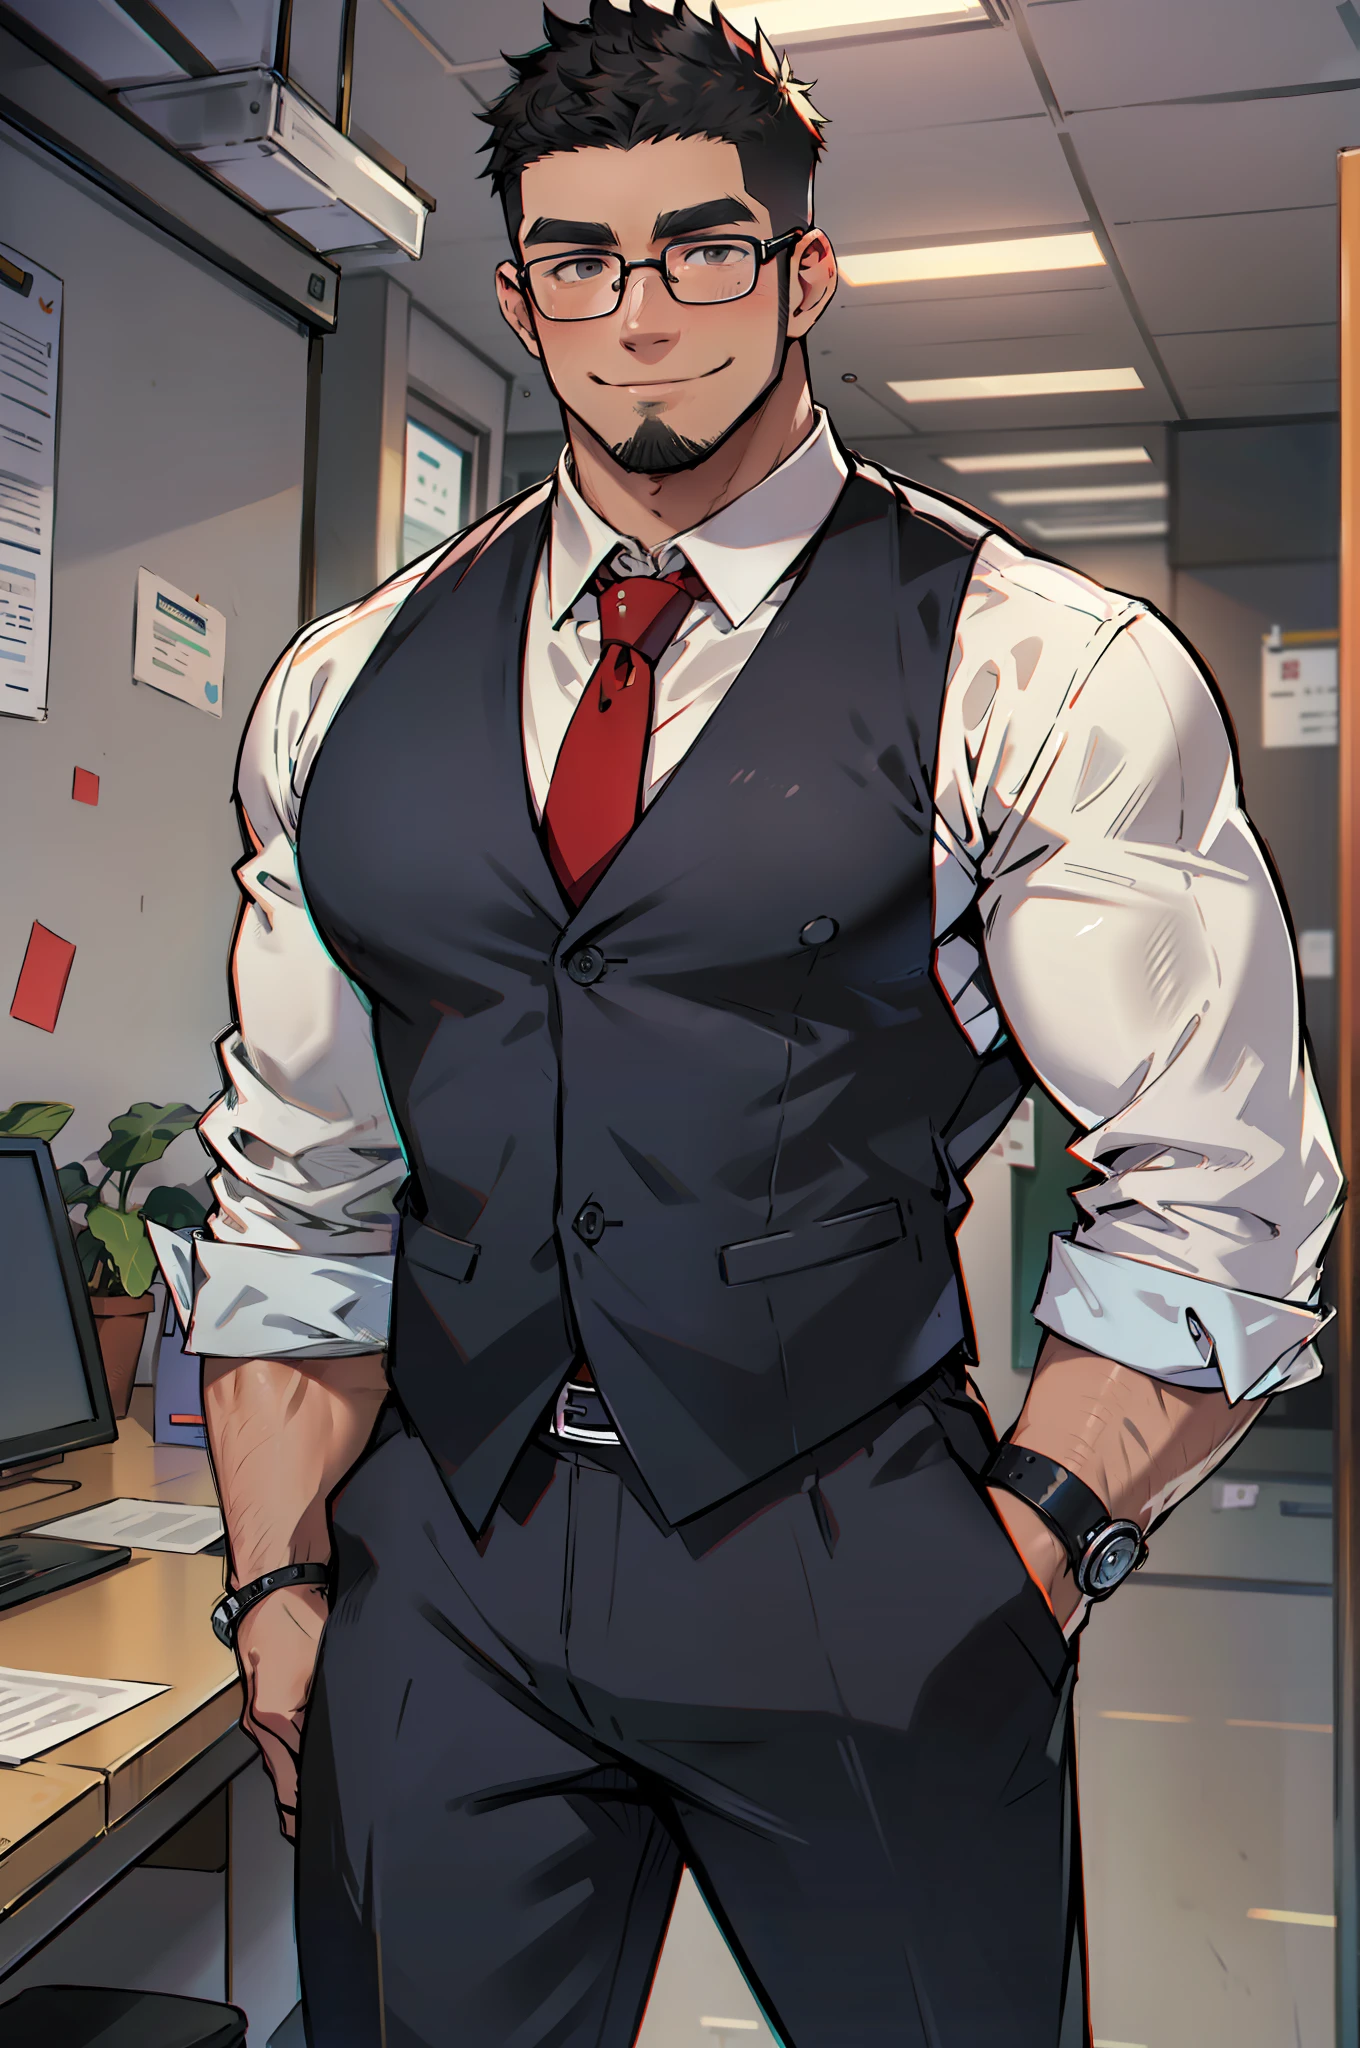 4k, 杰作, 高分辨率:1.2, 1 名男子, 42岁, 独自的, 仅有的, 肌肉发达!!!, 真的很高, 大物理 (兽), 平头, 胡子, 黑发, 可爱的笑容, 友好的, 站在办公室里, 穿正式裤子, 穿着朴素的正式办公室衬衫, 戴红领带, 整洁的服装, 戴眼镜, 背景是楼上的办公室, 极其详细, 扁平风格, ((不